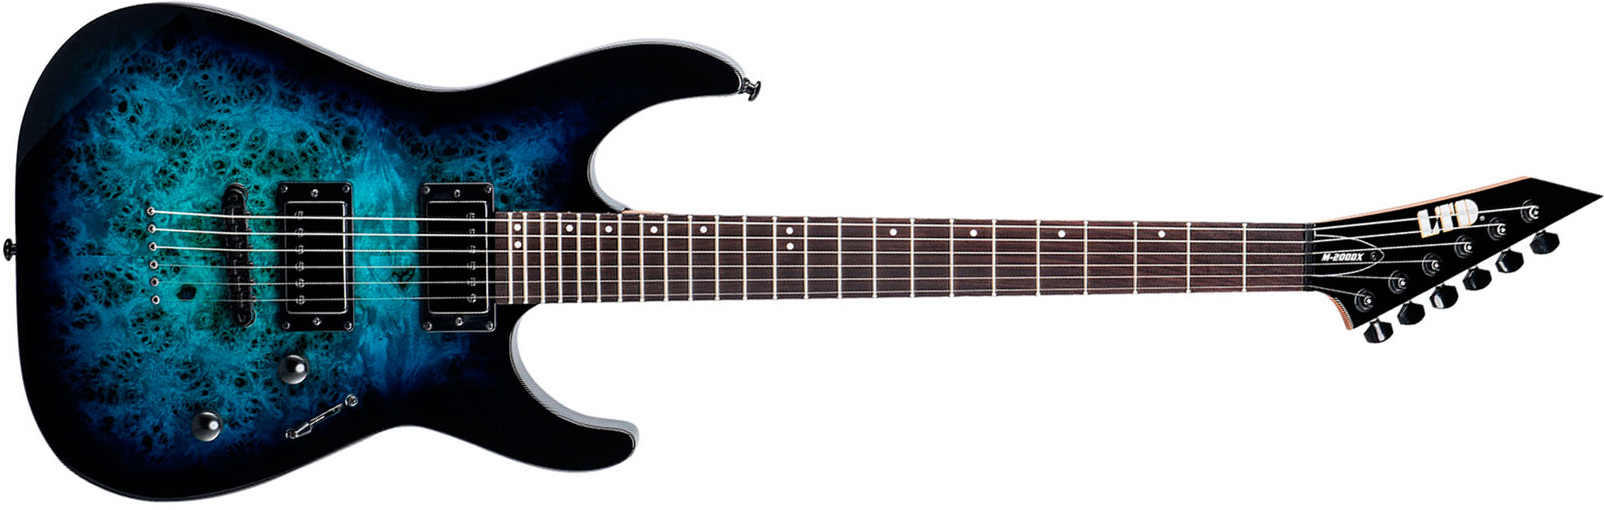 Ltd M200dx 2h Ht Rw - Blue Burst - Elektrische gitaar in Str-vorm - Main picture